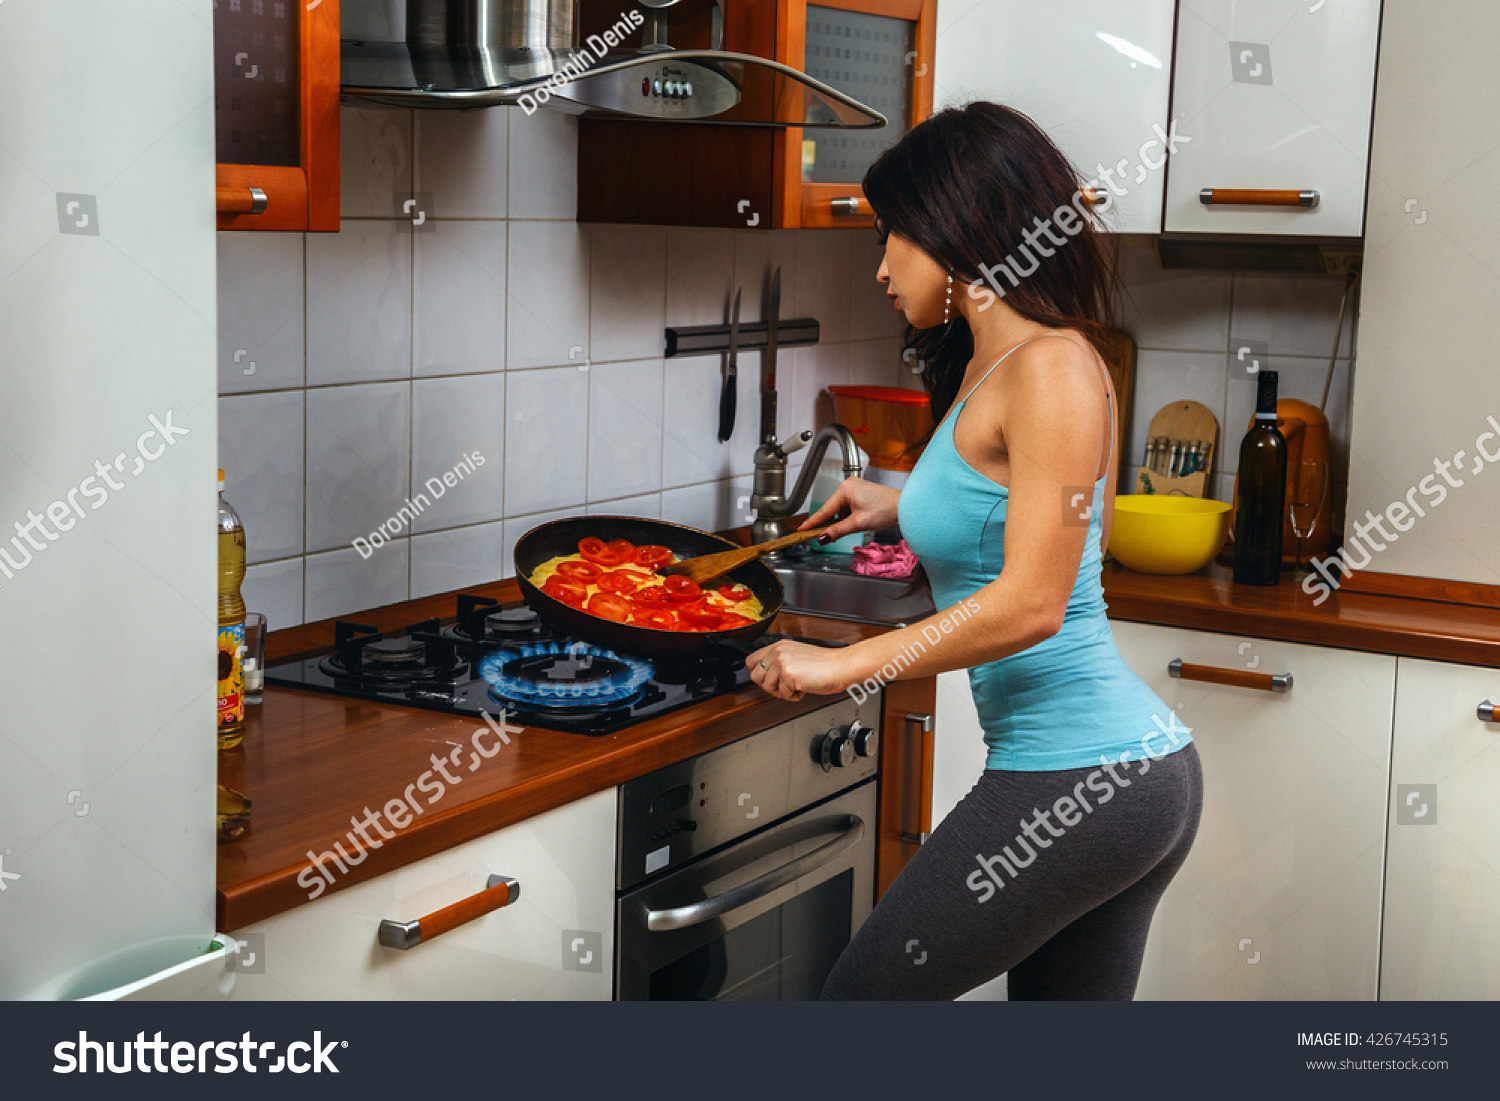 Голая девочка на кухне